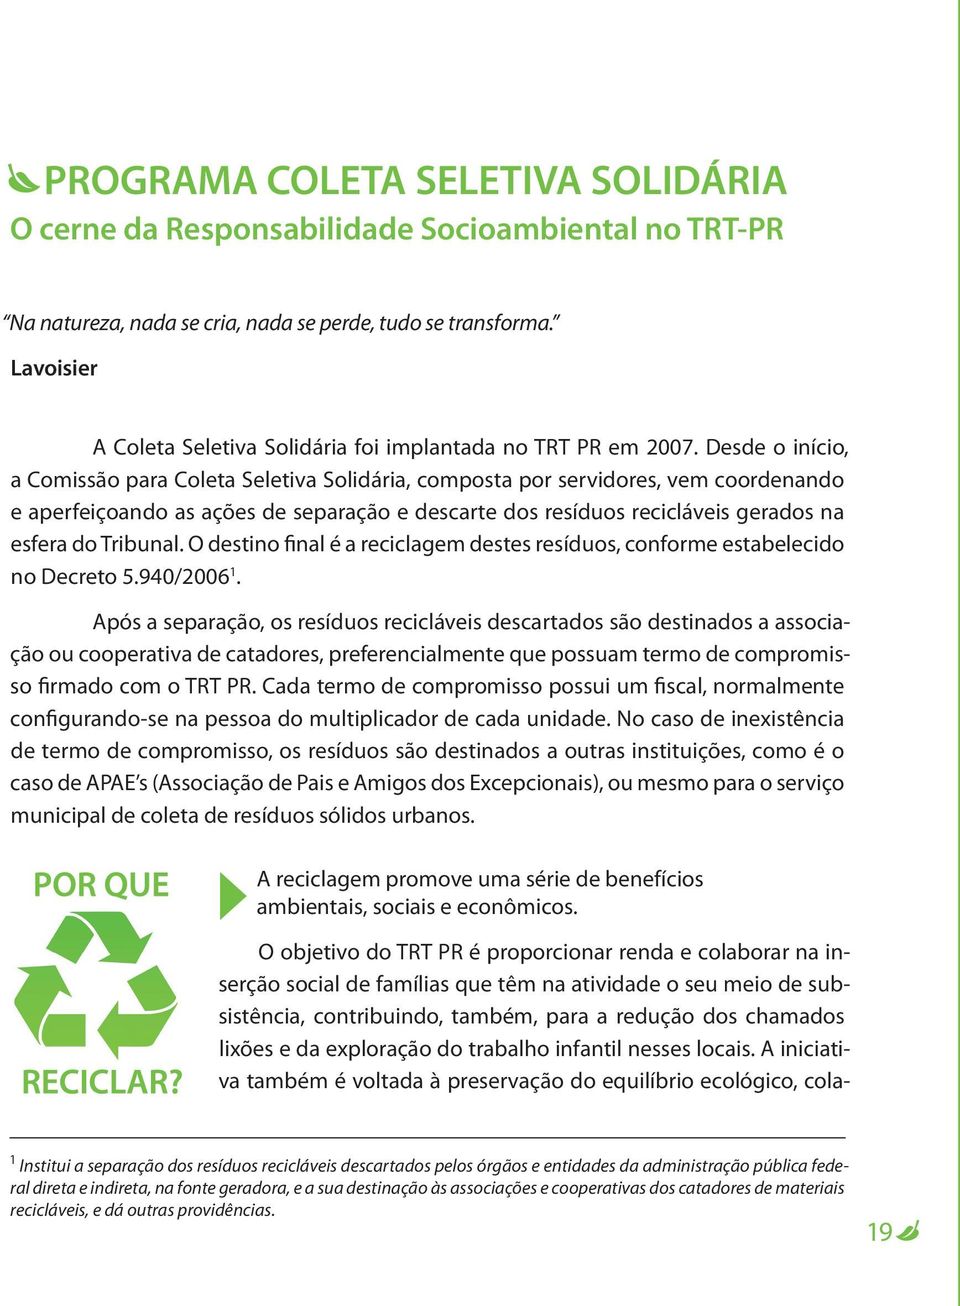 Desde o início, a Comissão para Coleta Seletiva Solidária, composta por servidores, vem coordenando e aperfeiçoando as ações de separação e descarte dos resíduos recicláveis gerados na esfera do